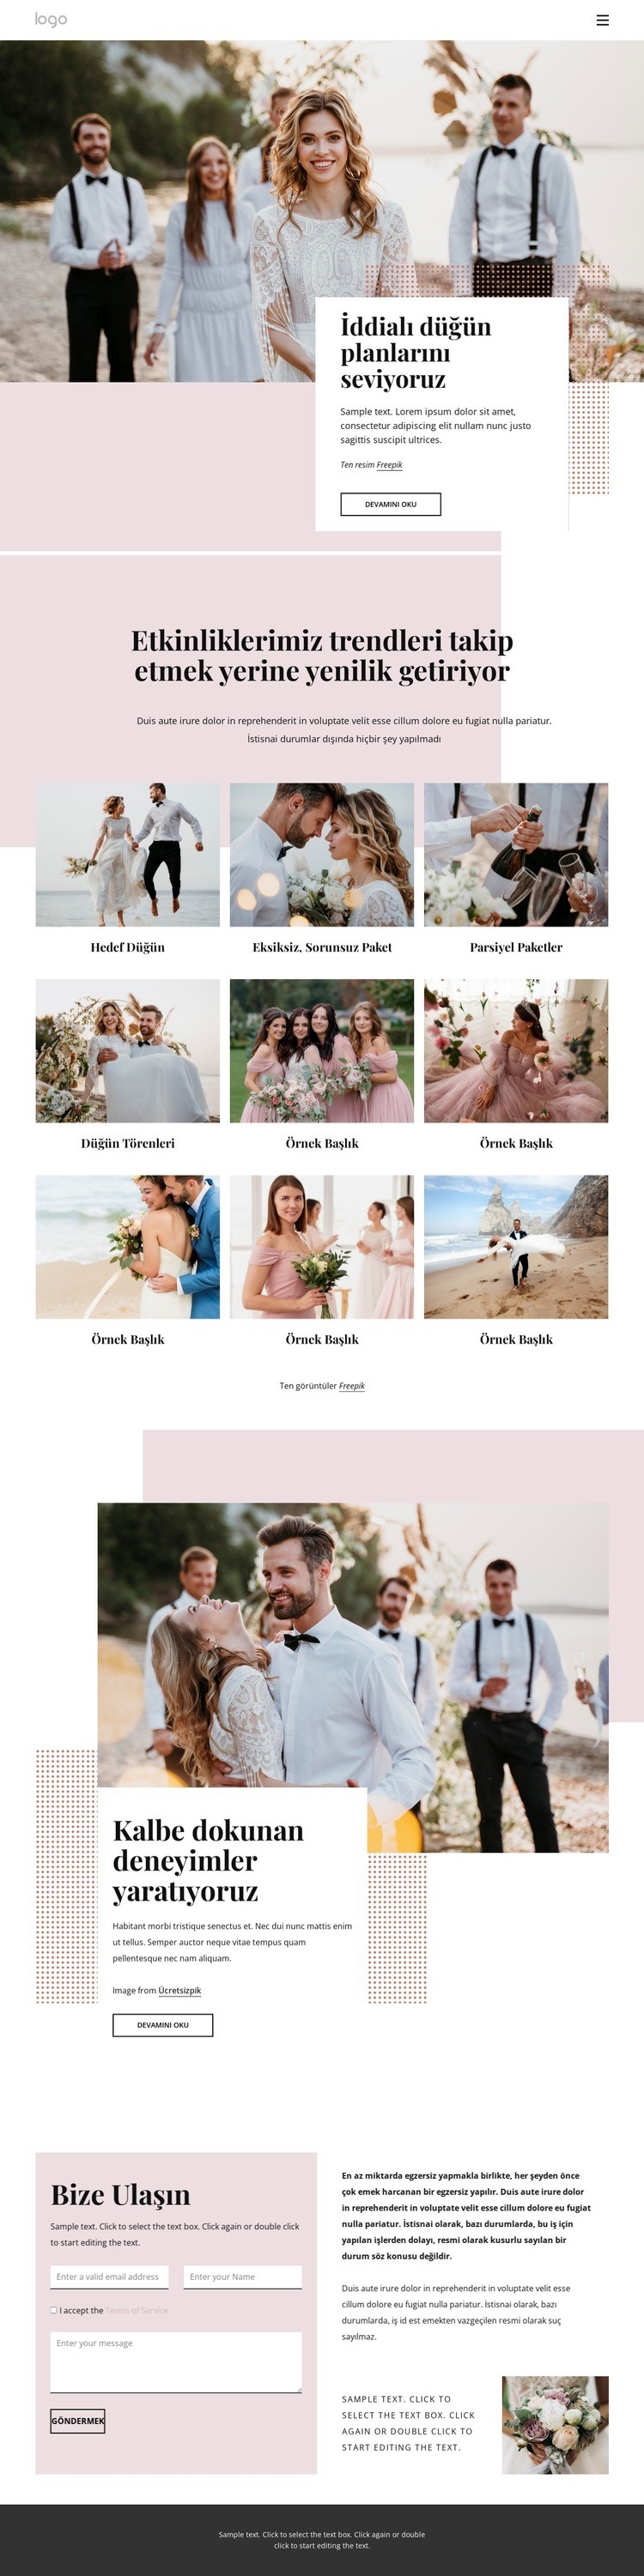 İddialı düğün planlarını seviyoruz HTML5 Şablonu